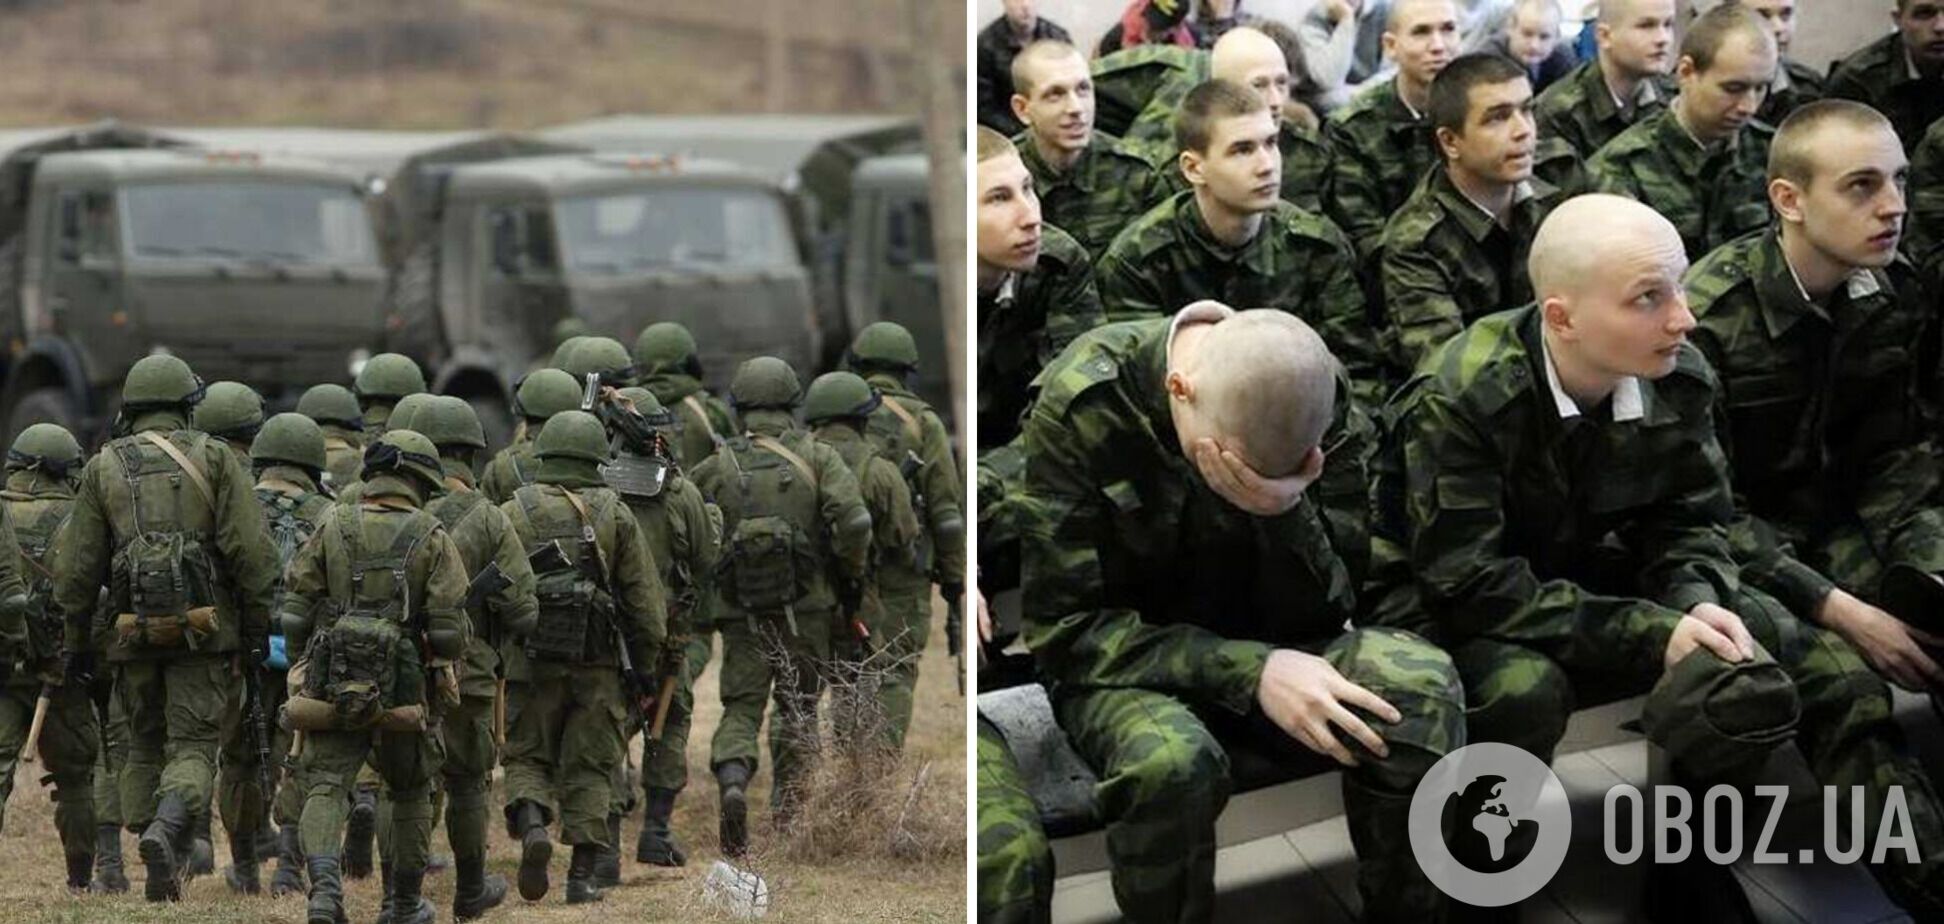 Российские спецназовцы в Хабаровске массово увольняются, чтобы не ехать умирать на 'спецоперации' в Украине, – журналист